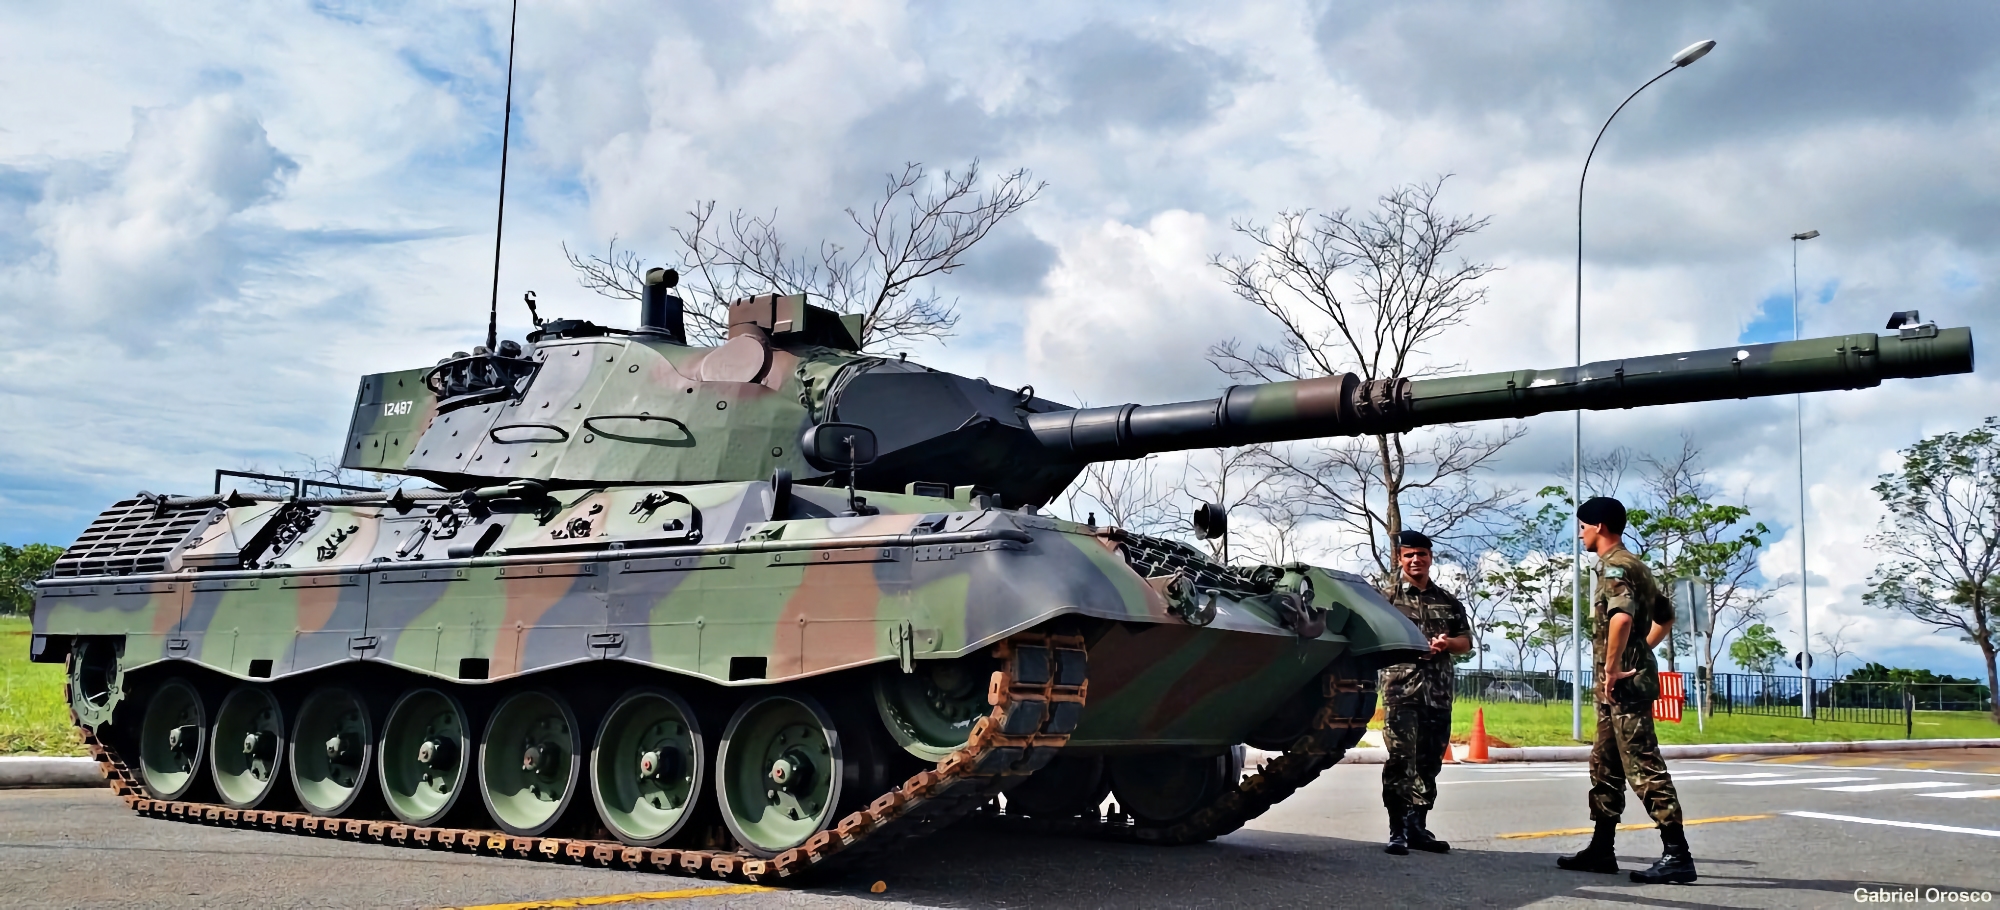 Krauss-Maffei Wegmann commence à préparer les chars Leopard 1A5 pour les forces armées ukrainiennes.